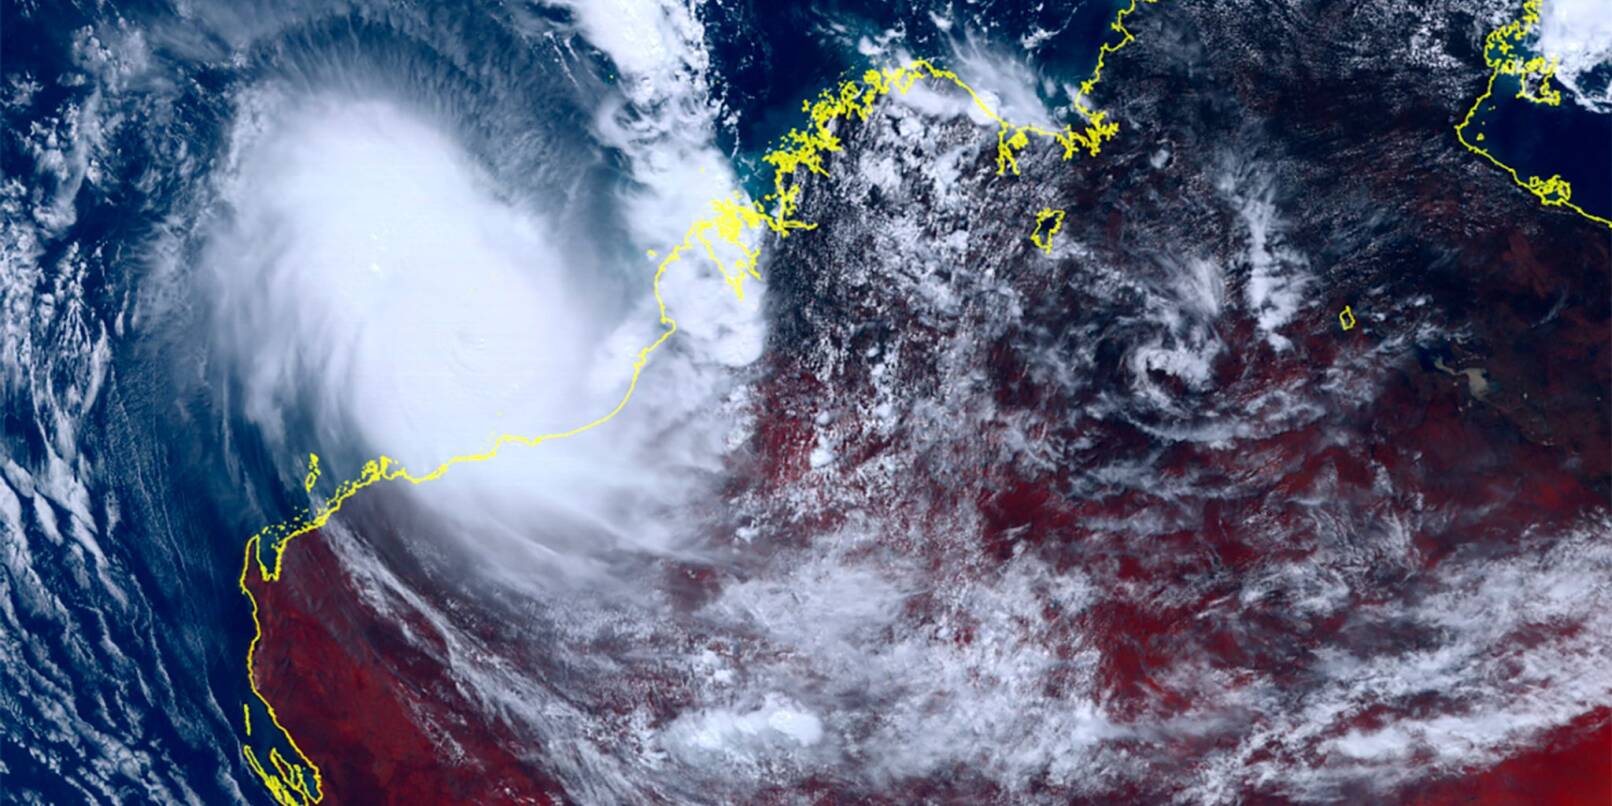 Dieses vom japanischen Wettersatelliten Himawari-8 aufgenommene und vom Nationalen Institut für Informations- und Kommunikationstechnologie zur Verfügung gestellte Satellitenbild zeigt den Zyklon Ilsa, der sich der australischen Westküste nähert.